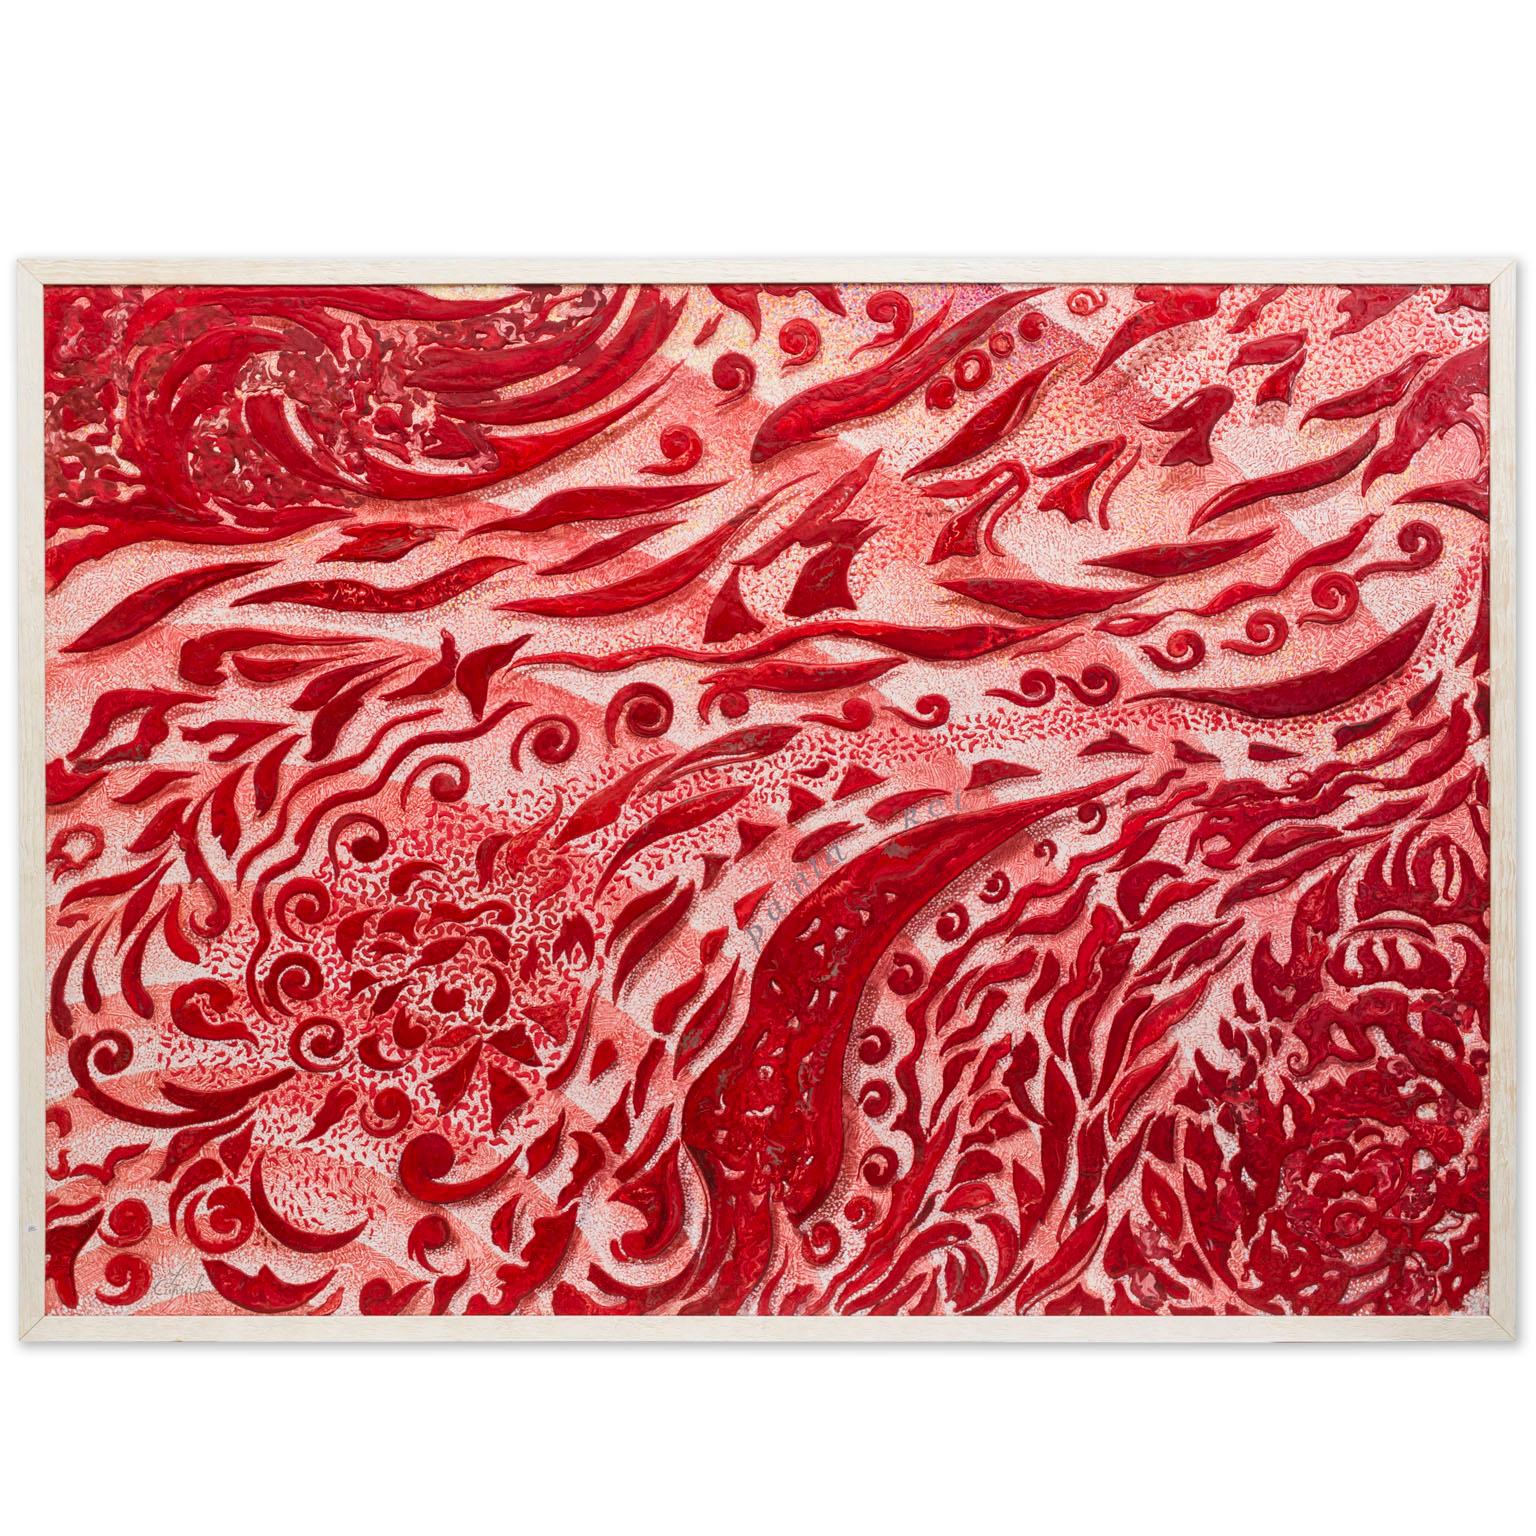  Panneau mural d'art rouge moderne fabriqué à la main en Italie par Cupioli disponible